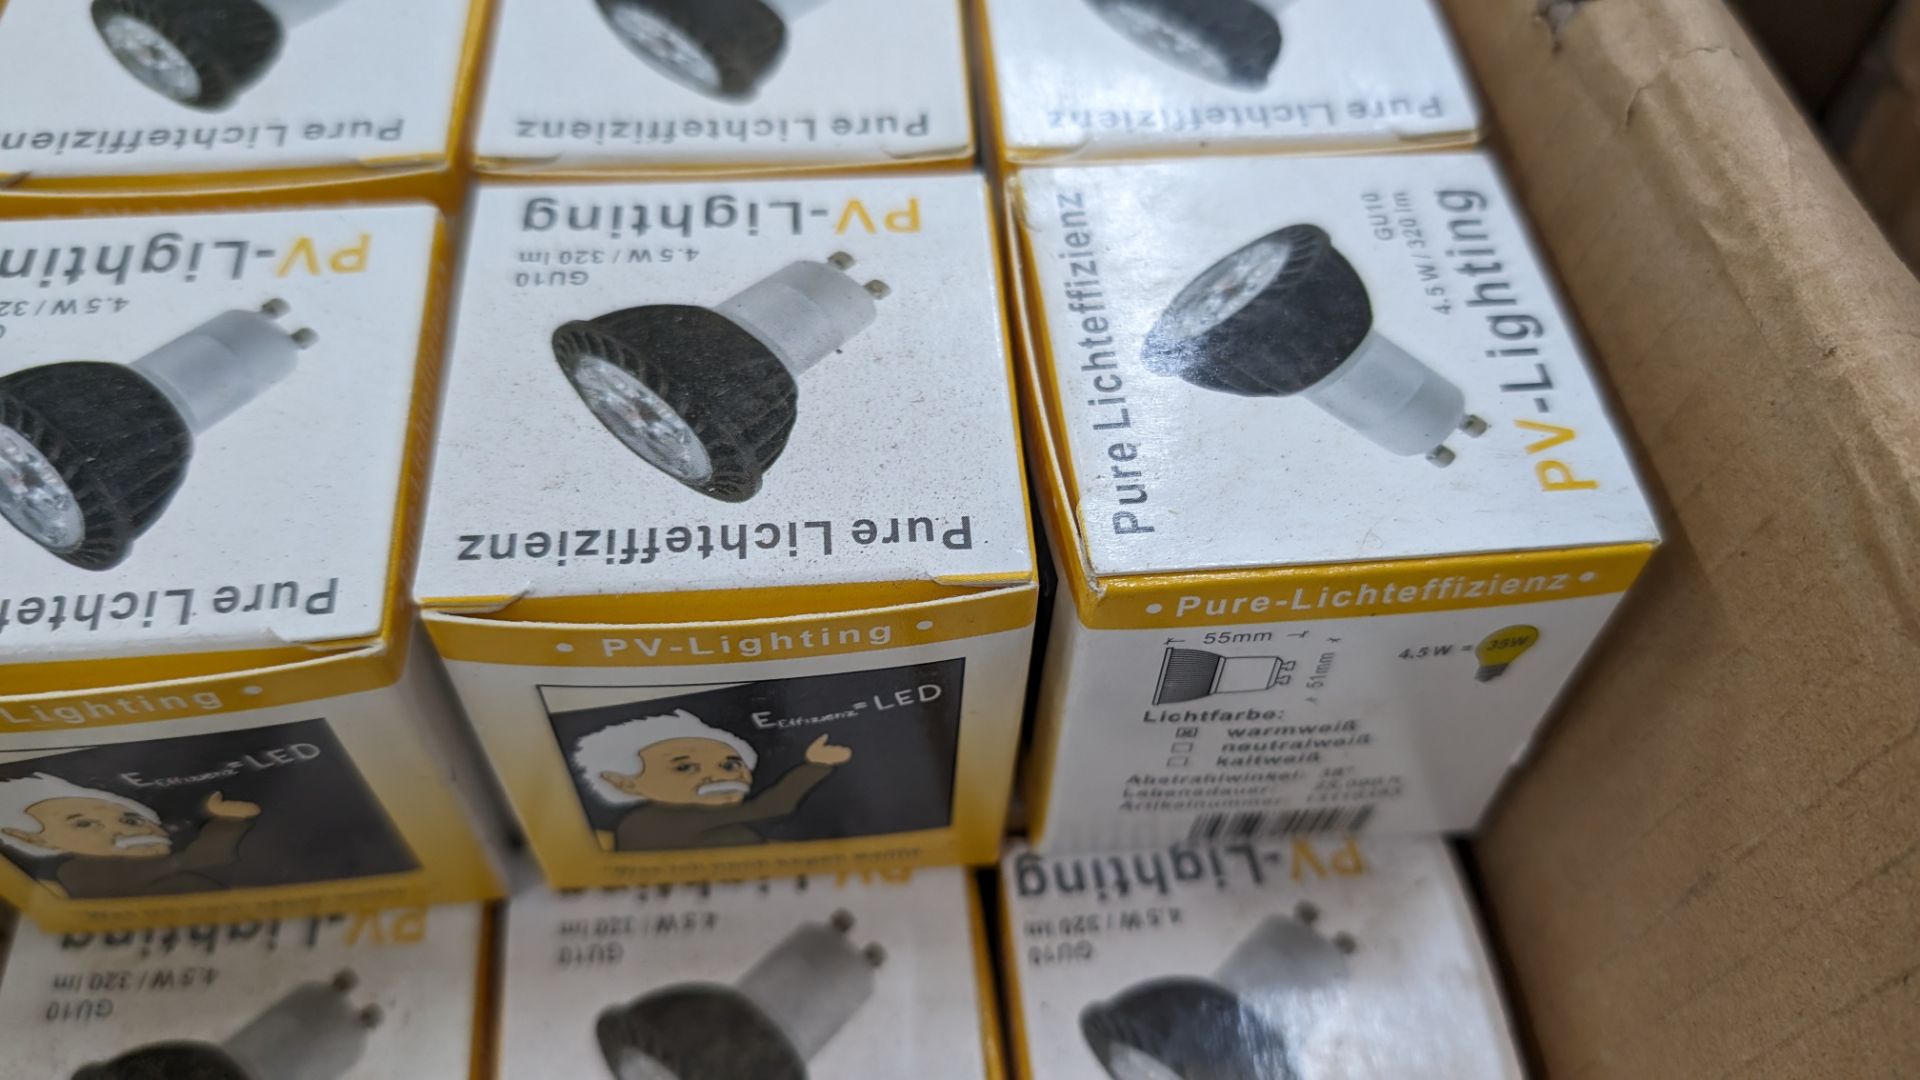 Approximately 166 GU10 LED bulbs, 220-240v, 4.5w, 320 lumens, warm white - 1 carton - Image 4 of 4